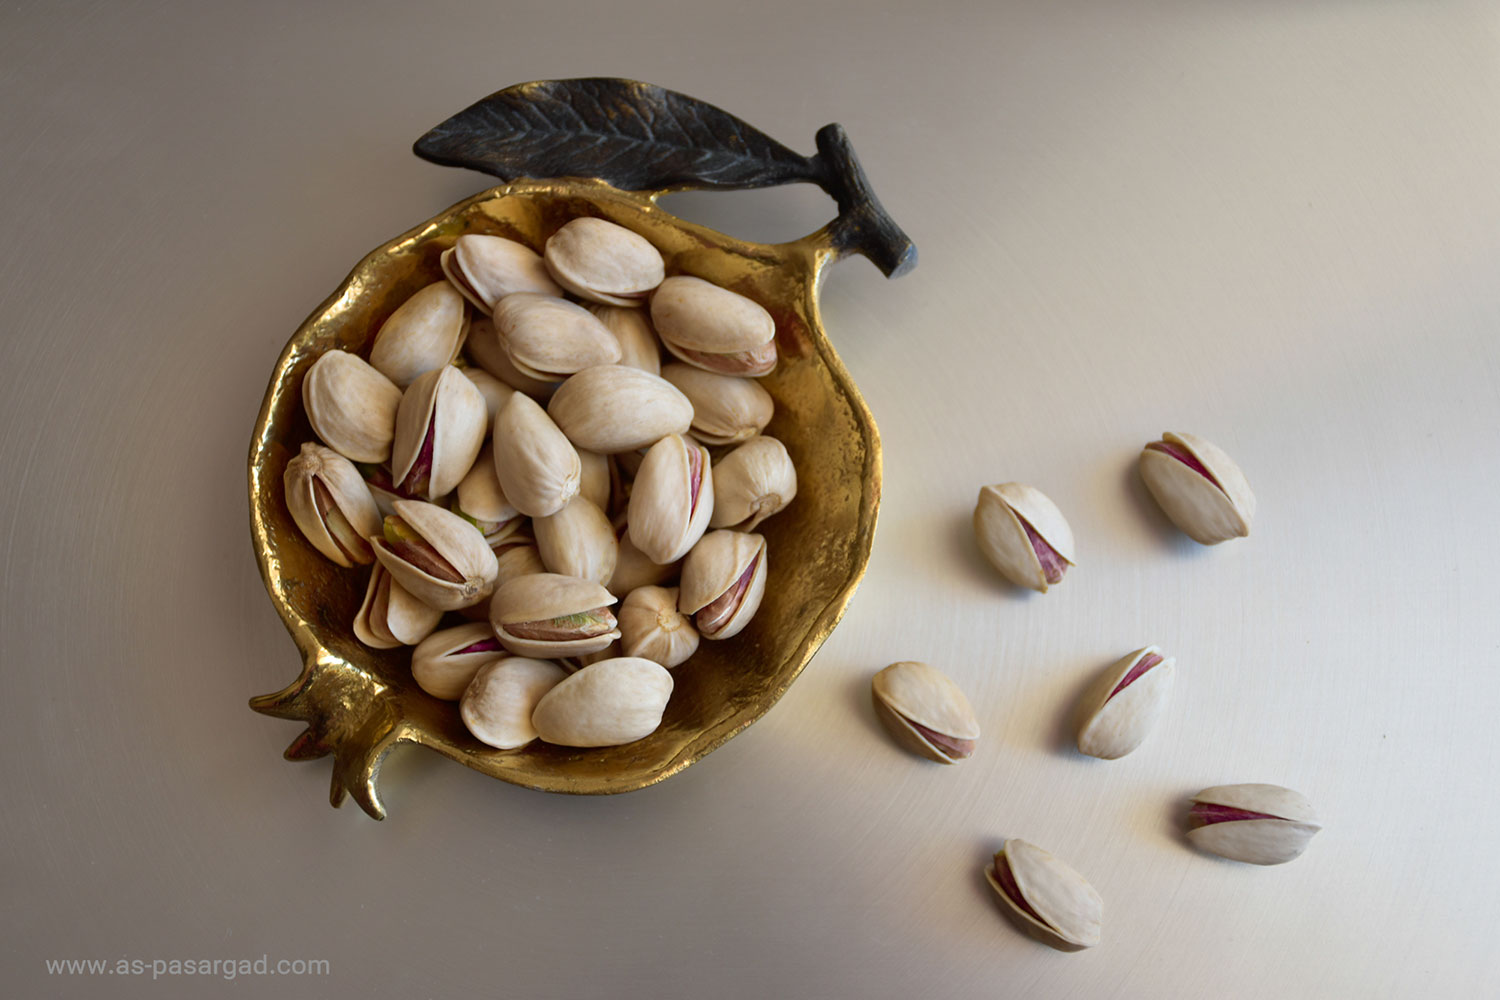 Export price of Iranian pistachios to Jordan | Pistachio Exporter & Supplier